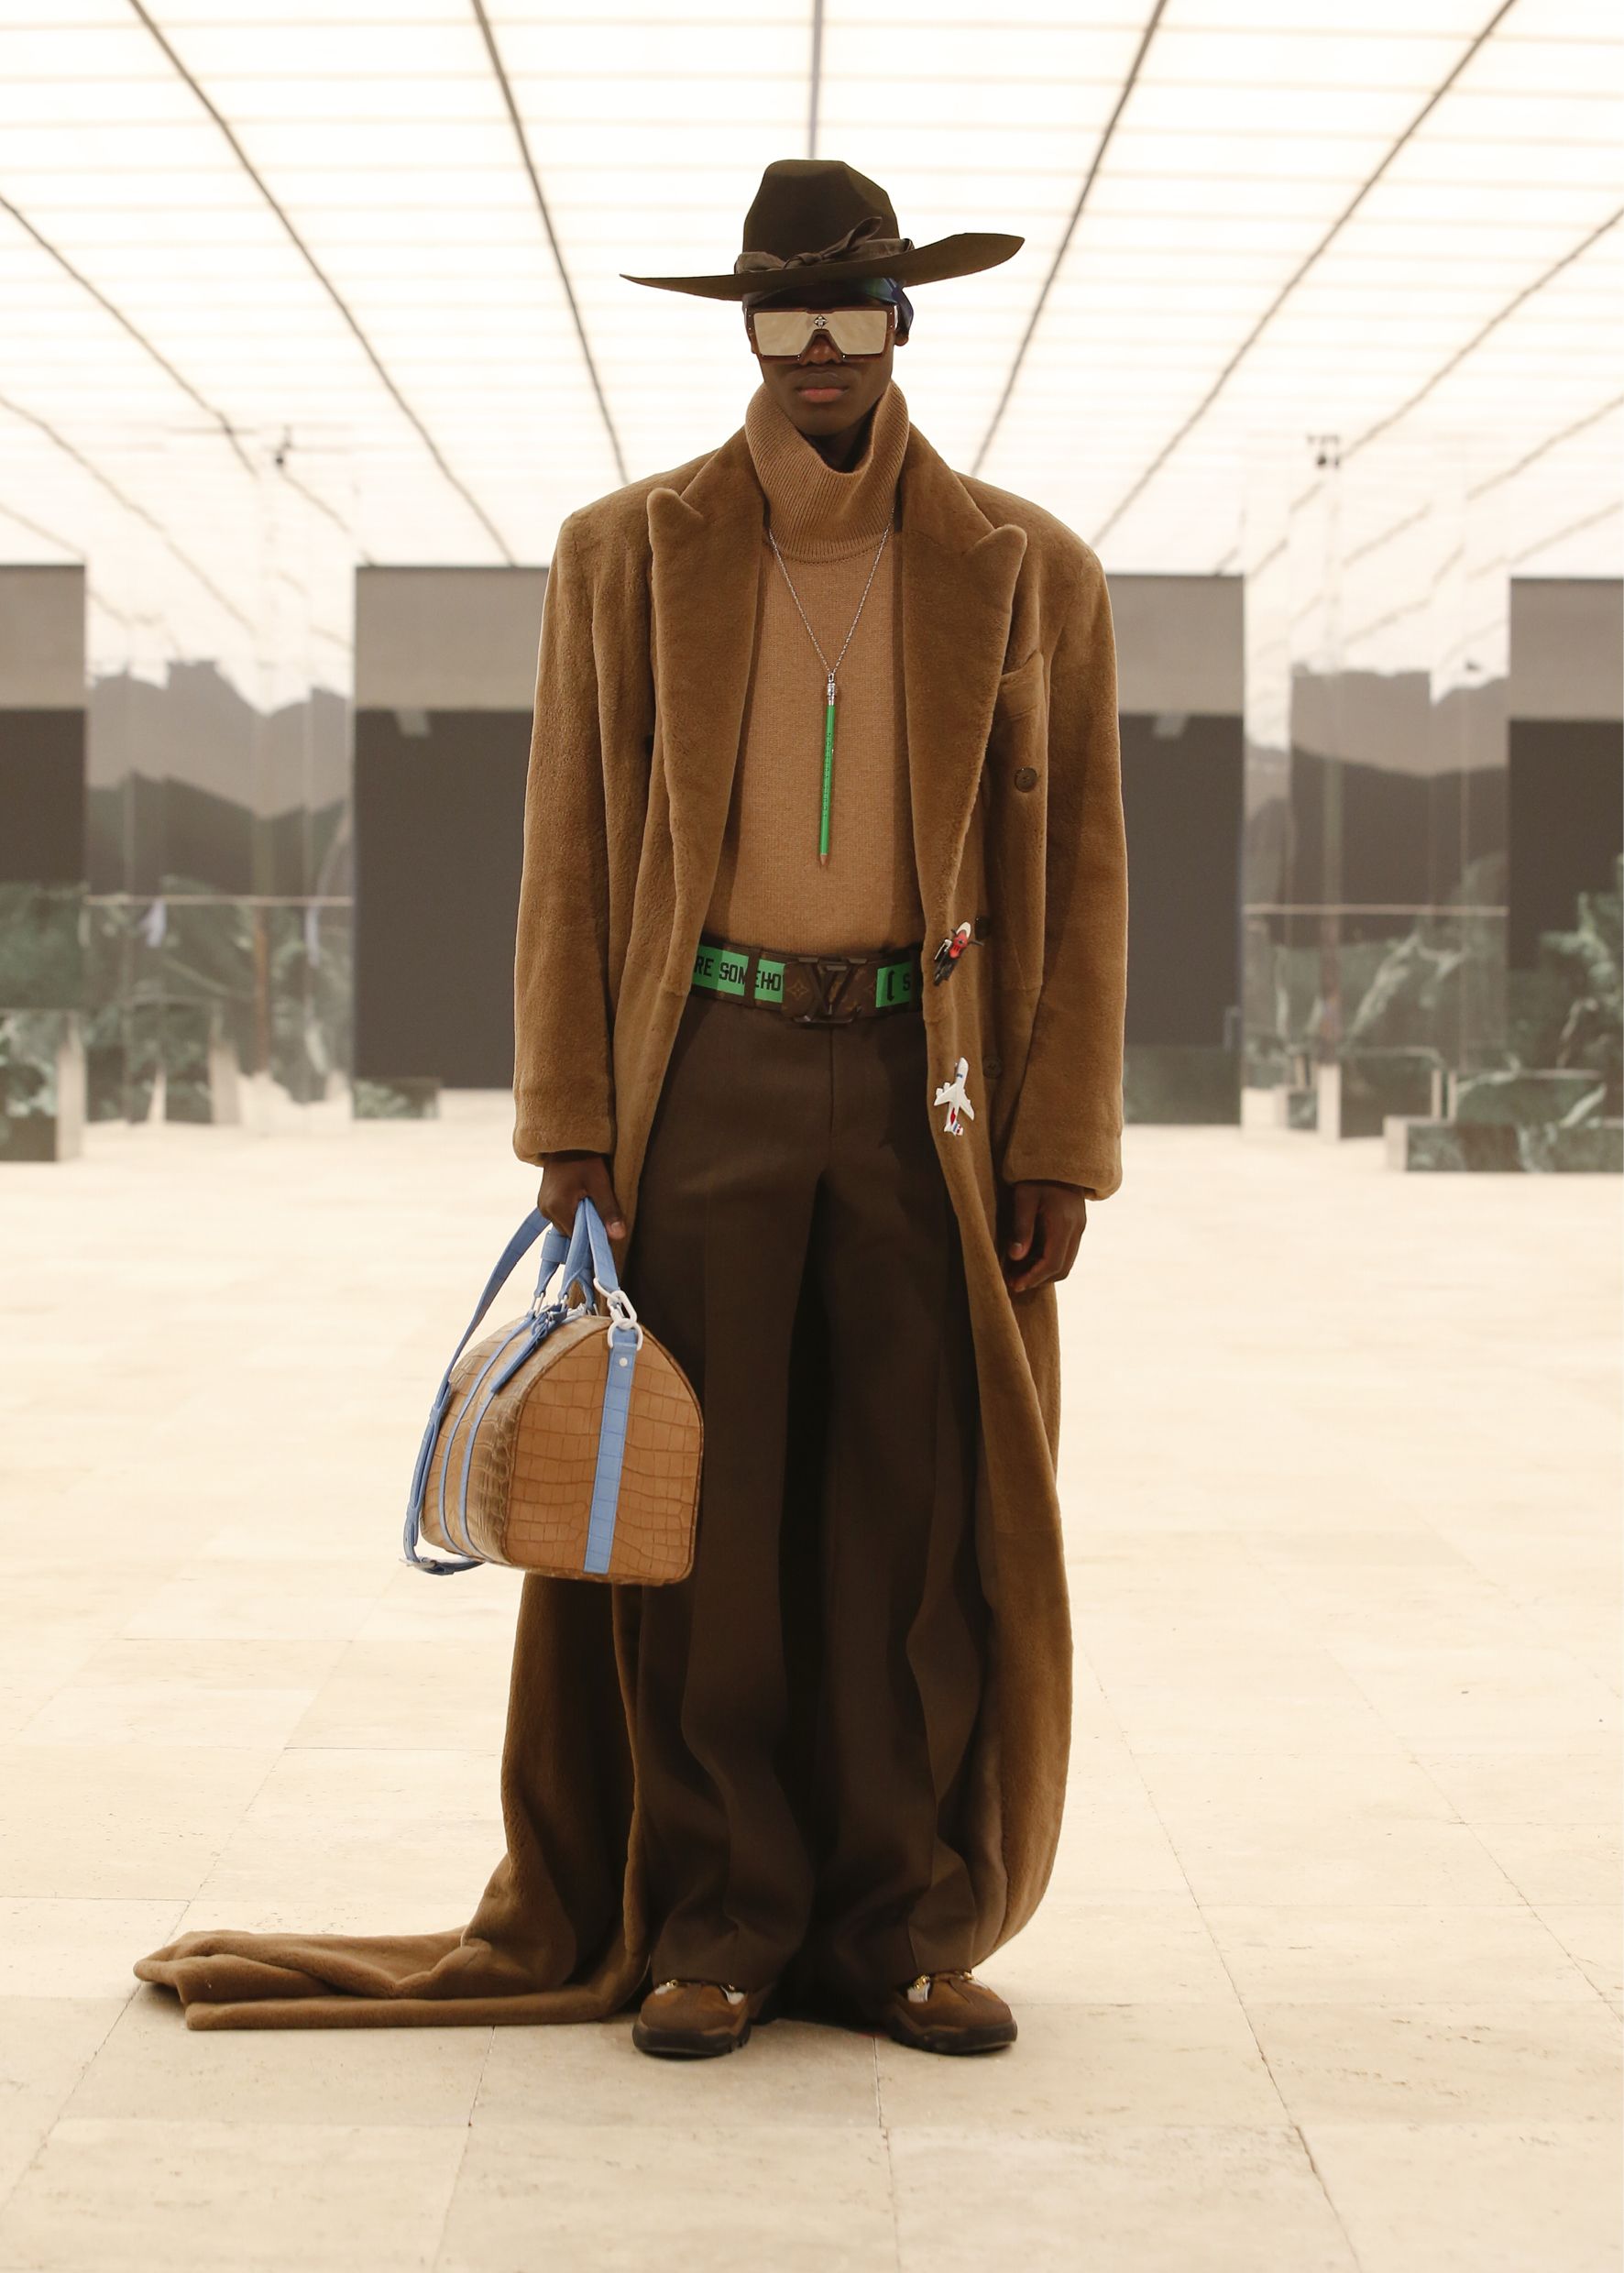 Por qué el nombramiento de Virgil Abloh en Louis Vuitton importa